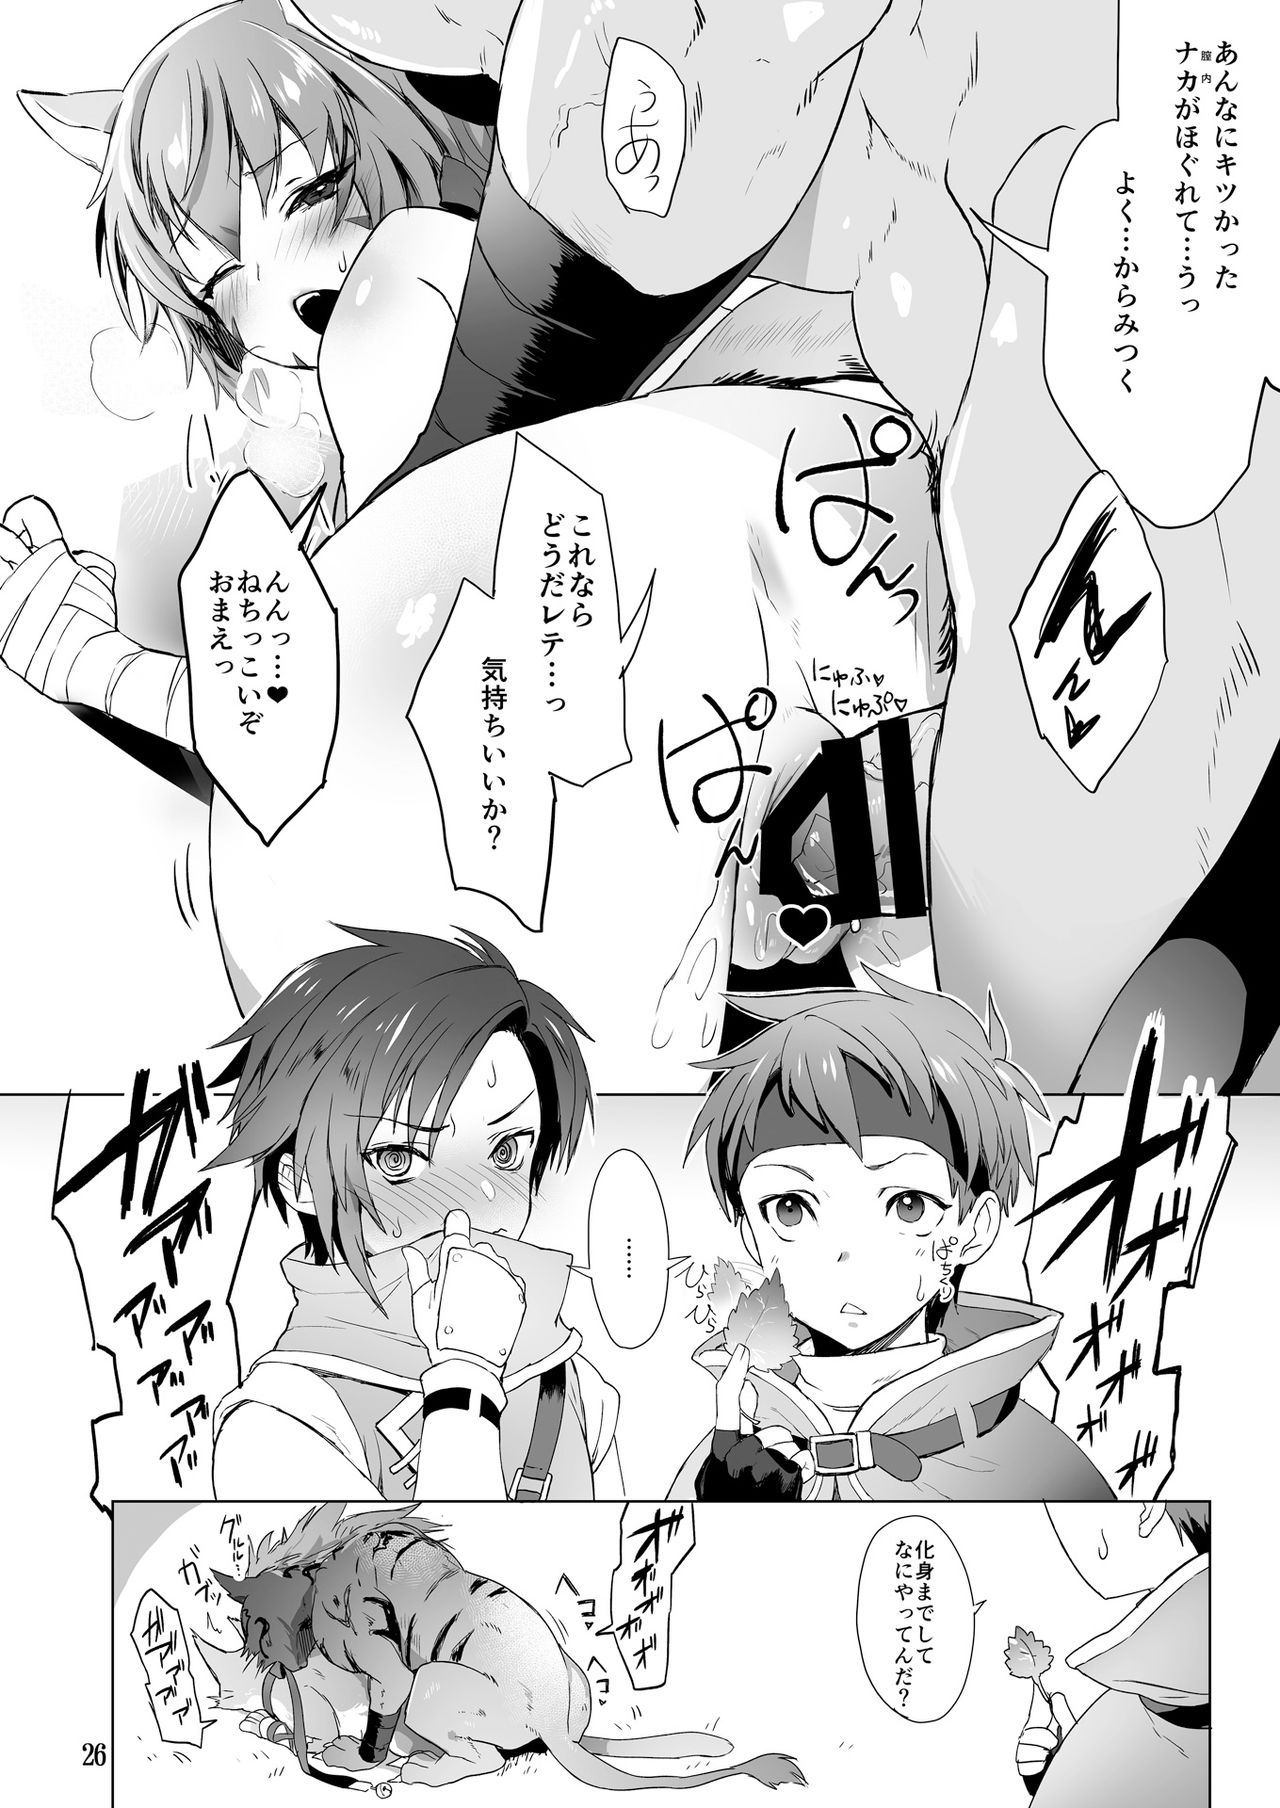 [BOBCATERS (Hamon Ai, Syunzo, Yajiro Masaru)] Oshi Chara Emblem (Fire Emblem) [Digital] page 25 full